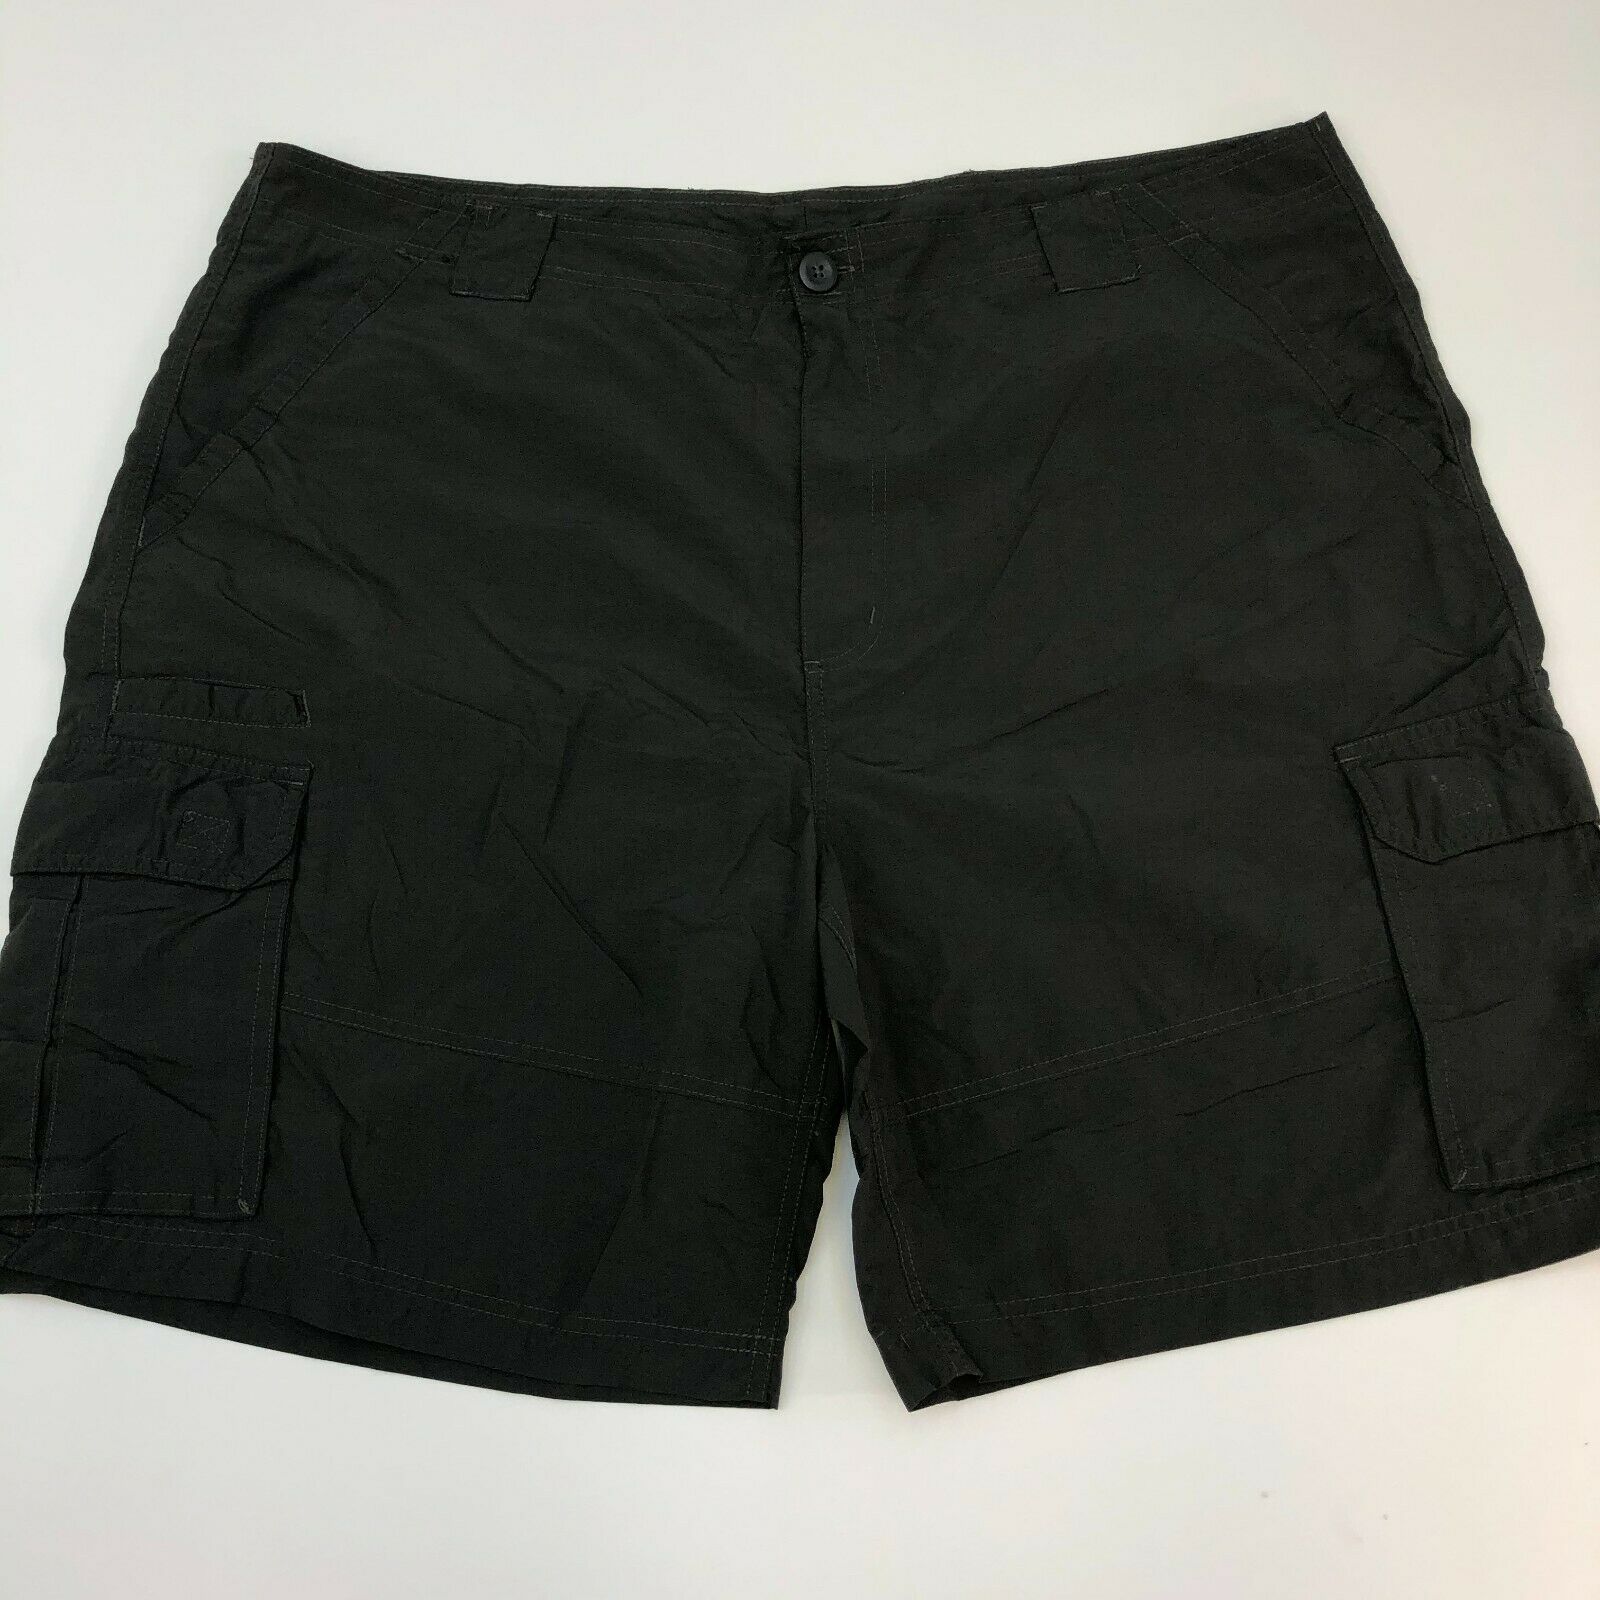 Faded Glory Cargo Shorts Mens 42 Black Nylon Casual Outdoors - Shorts